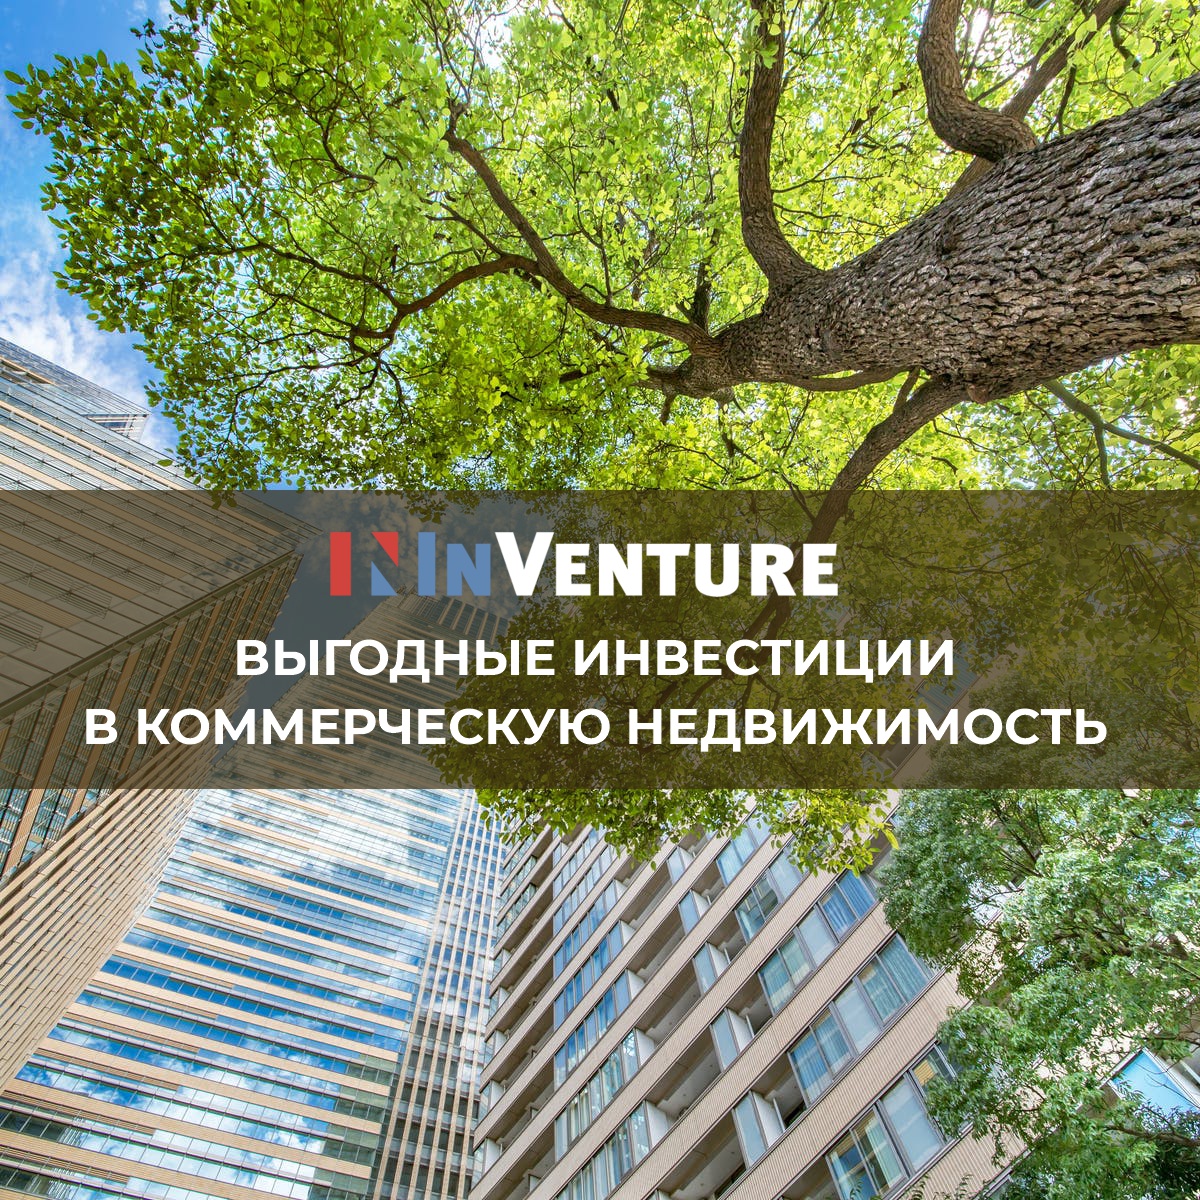 Складская недвижимость в Киевском регионе: устойчивый спрос арендаторов и снижение вакантности